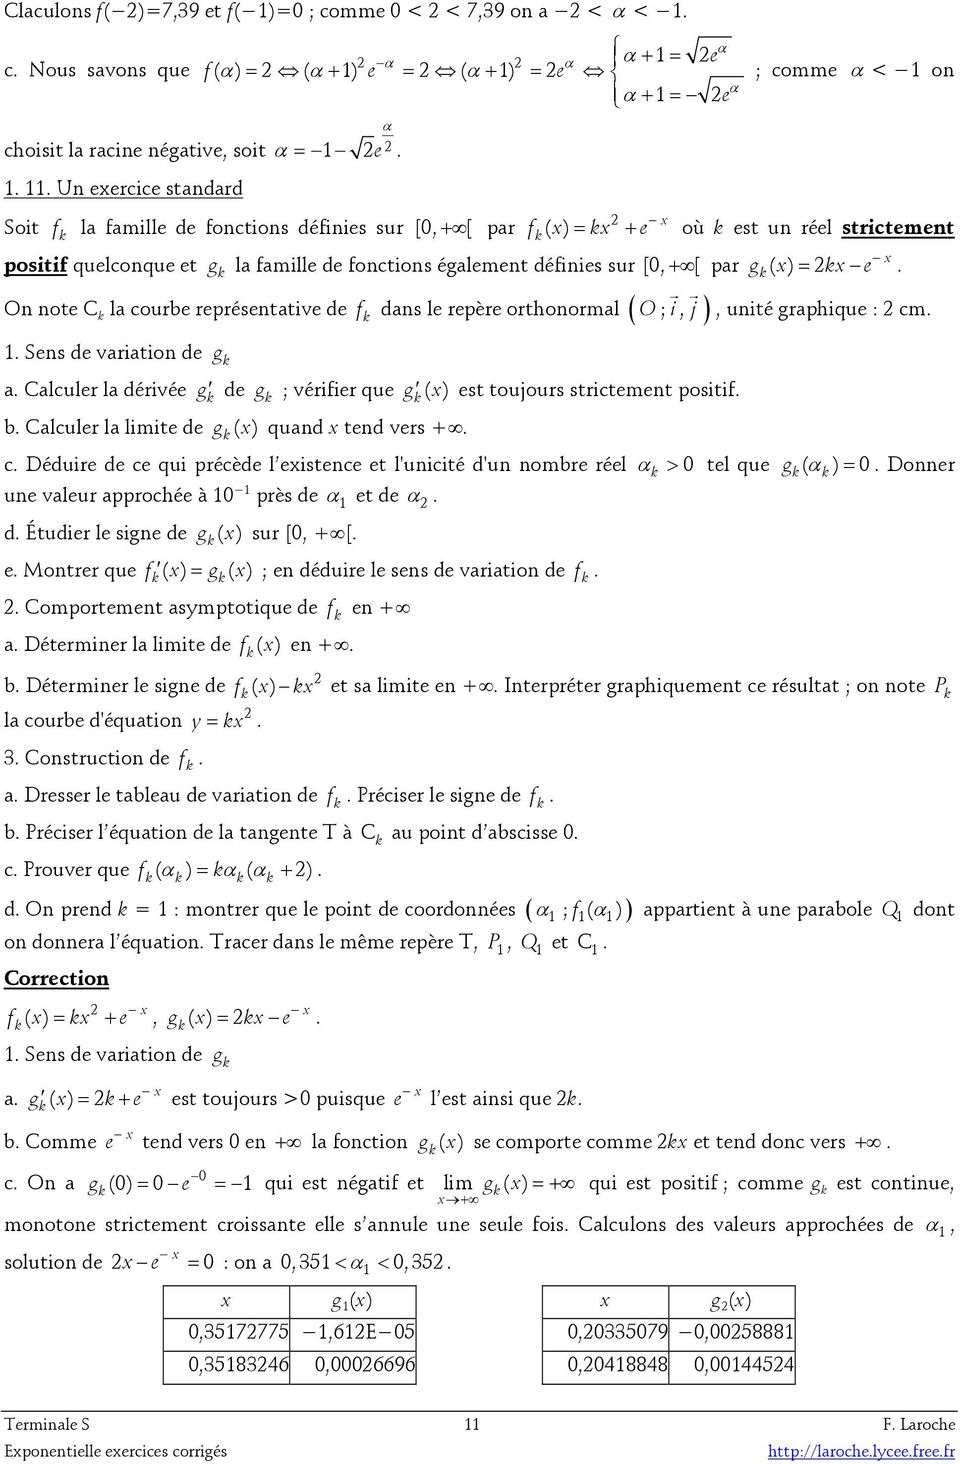 variatio d g f das l rpèr orthoormal ( ) a Calculr la dérivé g d g ; vérifir qu g ( ) st toujours strictmt positif b Calculr la limit d g ( ) quad td vrs + c Déduir d c qui précèd l istc t l'uicité